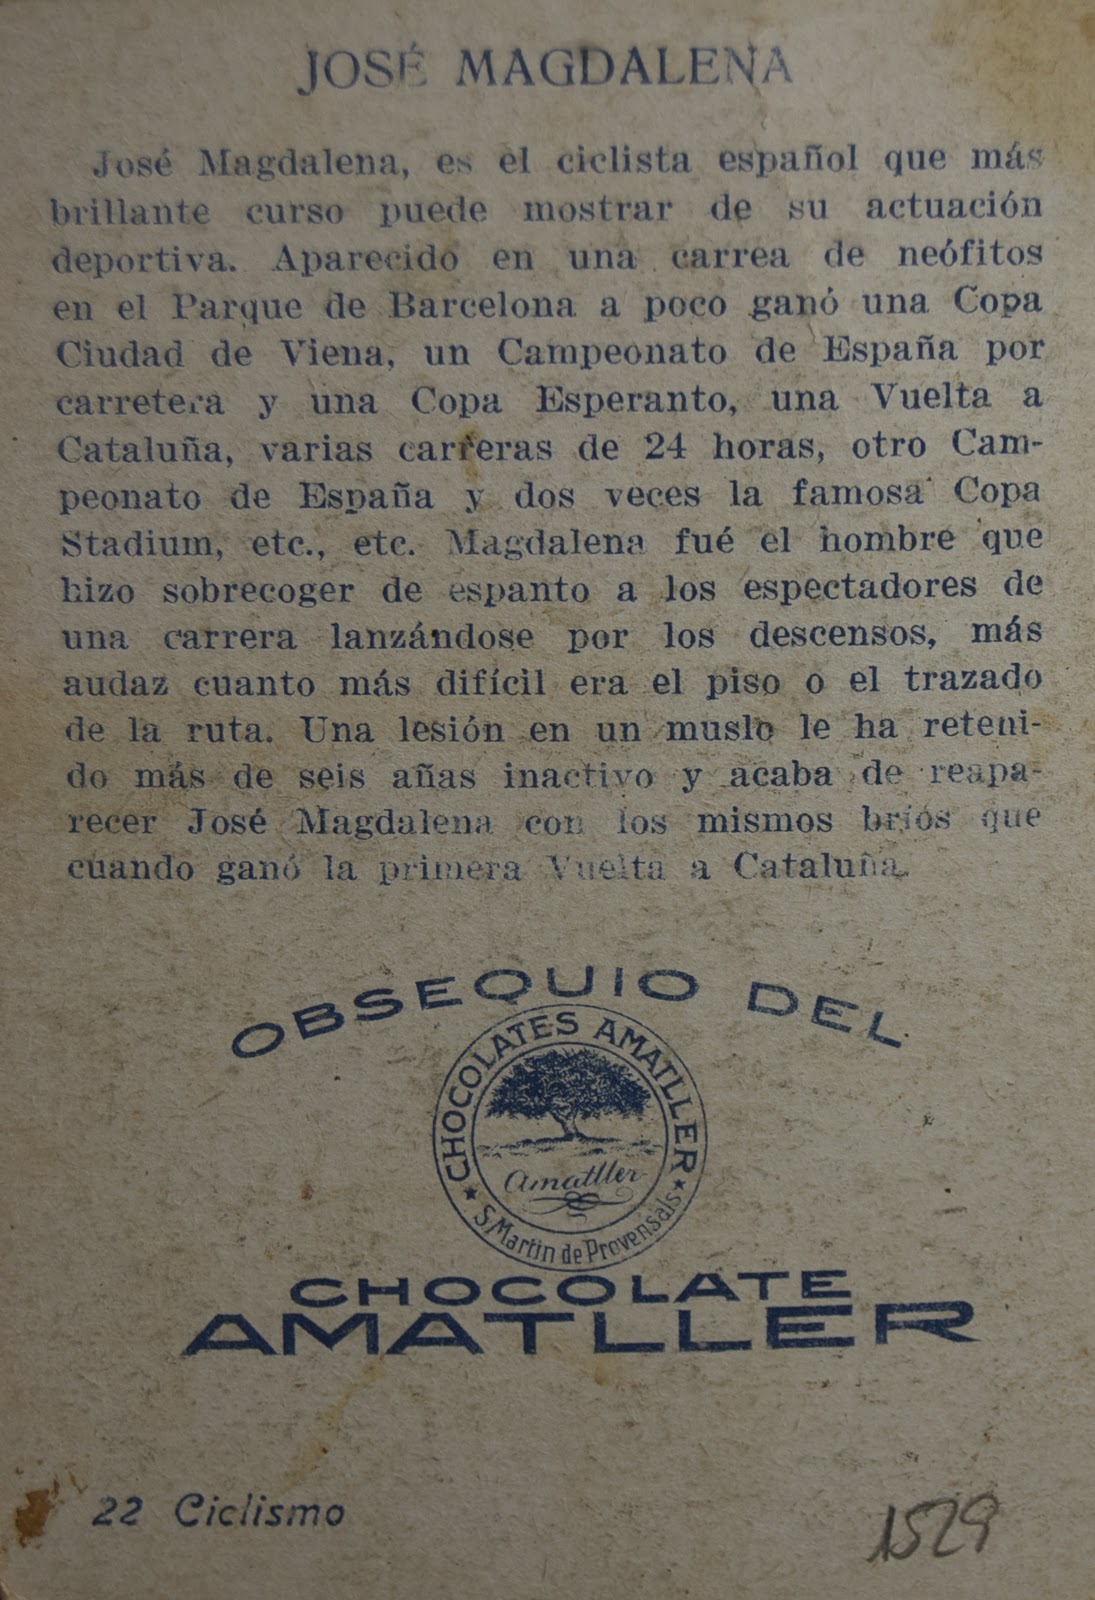 José Magdalena en un cromo de Chocolate Amatller